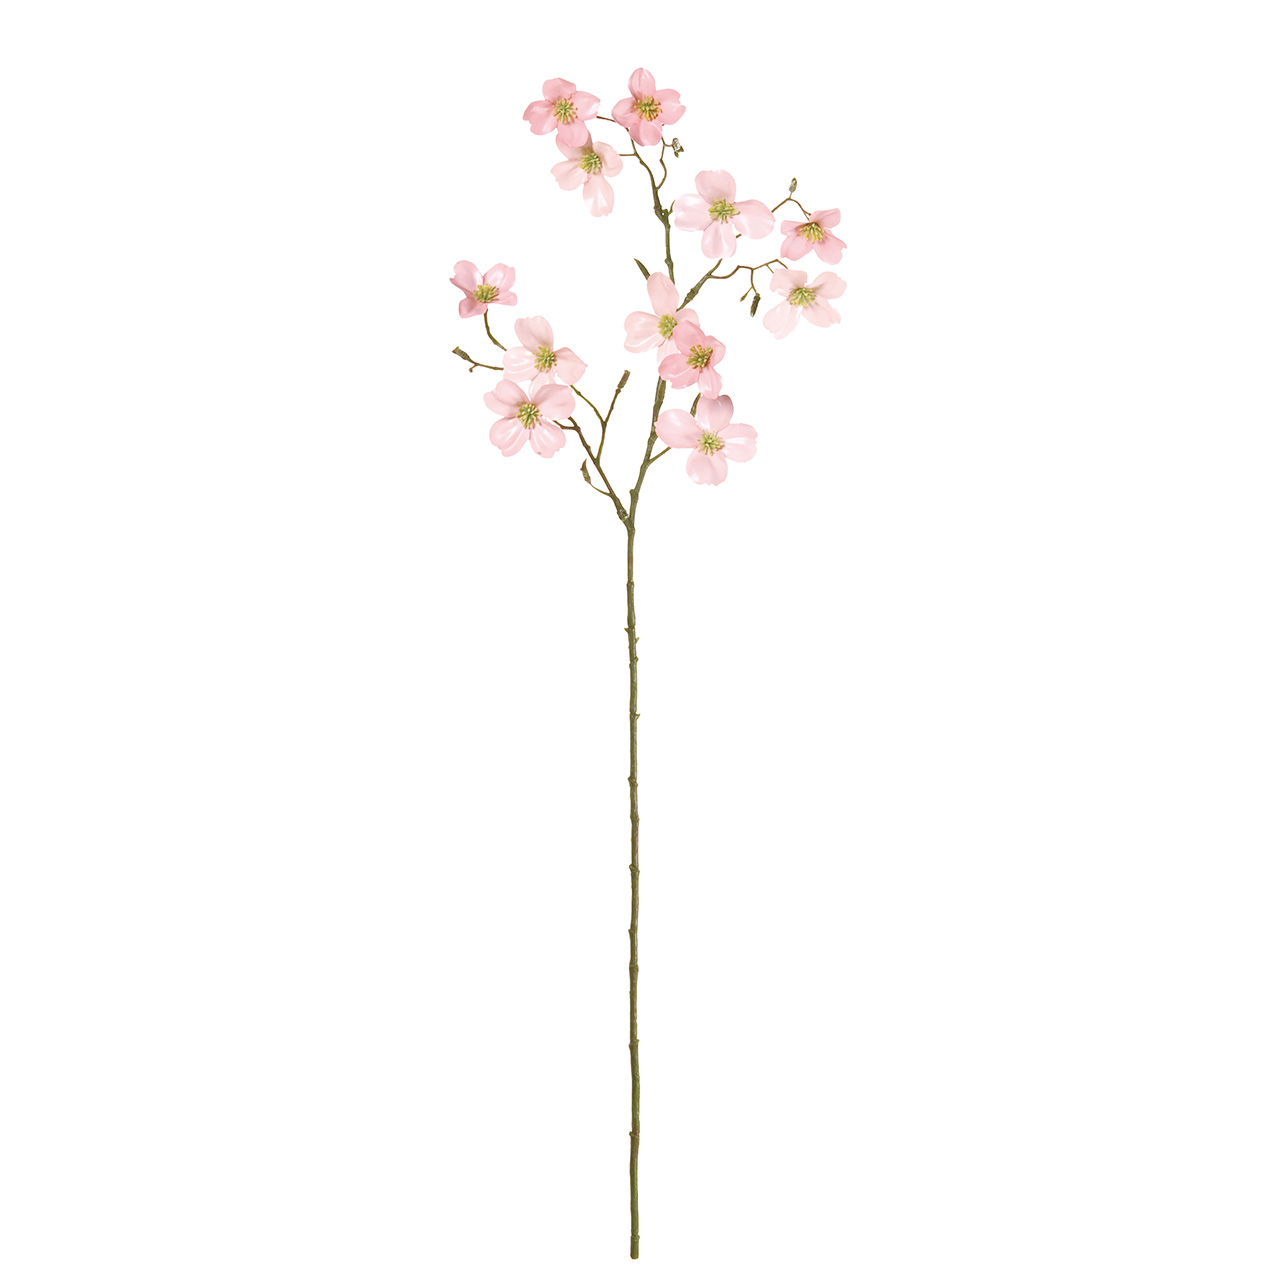 マイフラ 通販 Magiq 花みずきポーセリナ ライトピンク アーティフィシャルフラワー 造花 Fm 002 ハナミズキ ライトピンク Magiq アーティフィシャルフラワー 造花 全国にmagiq 花器 花資材などをお届けします